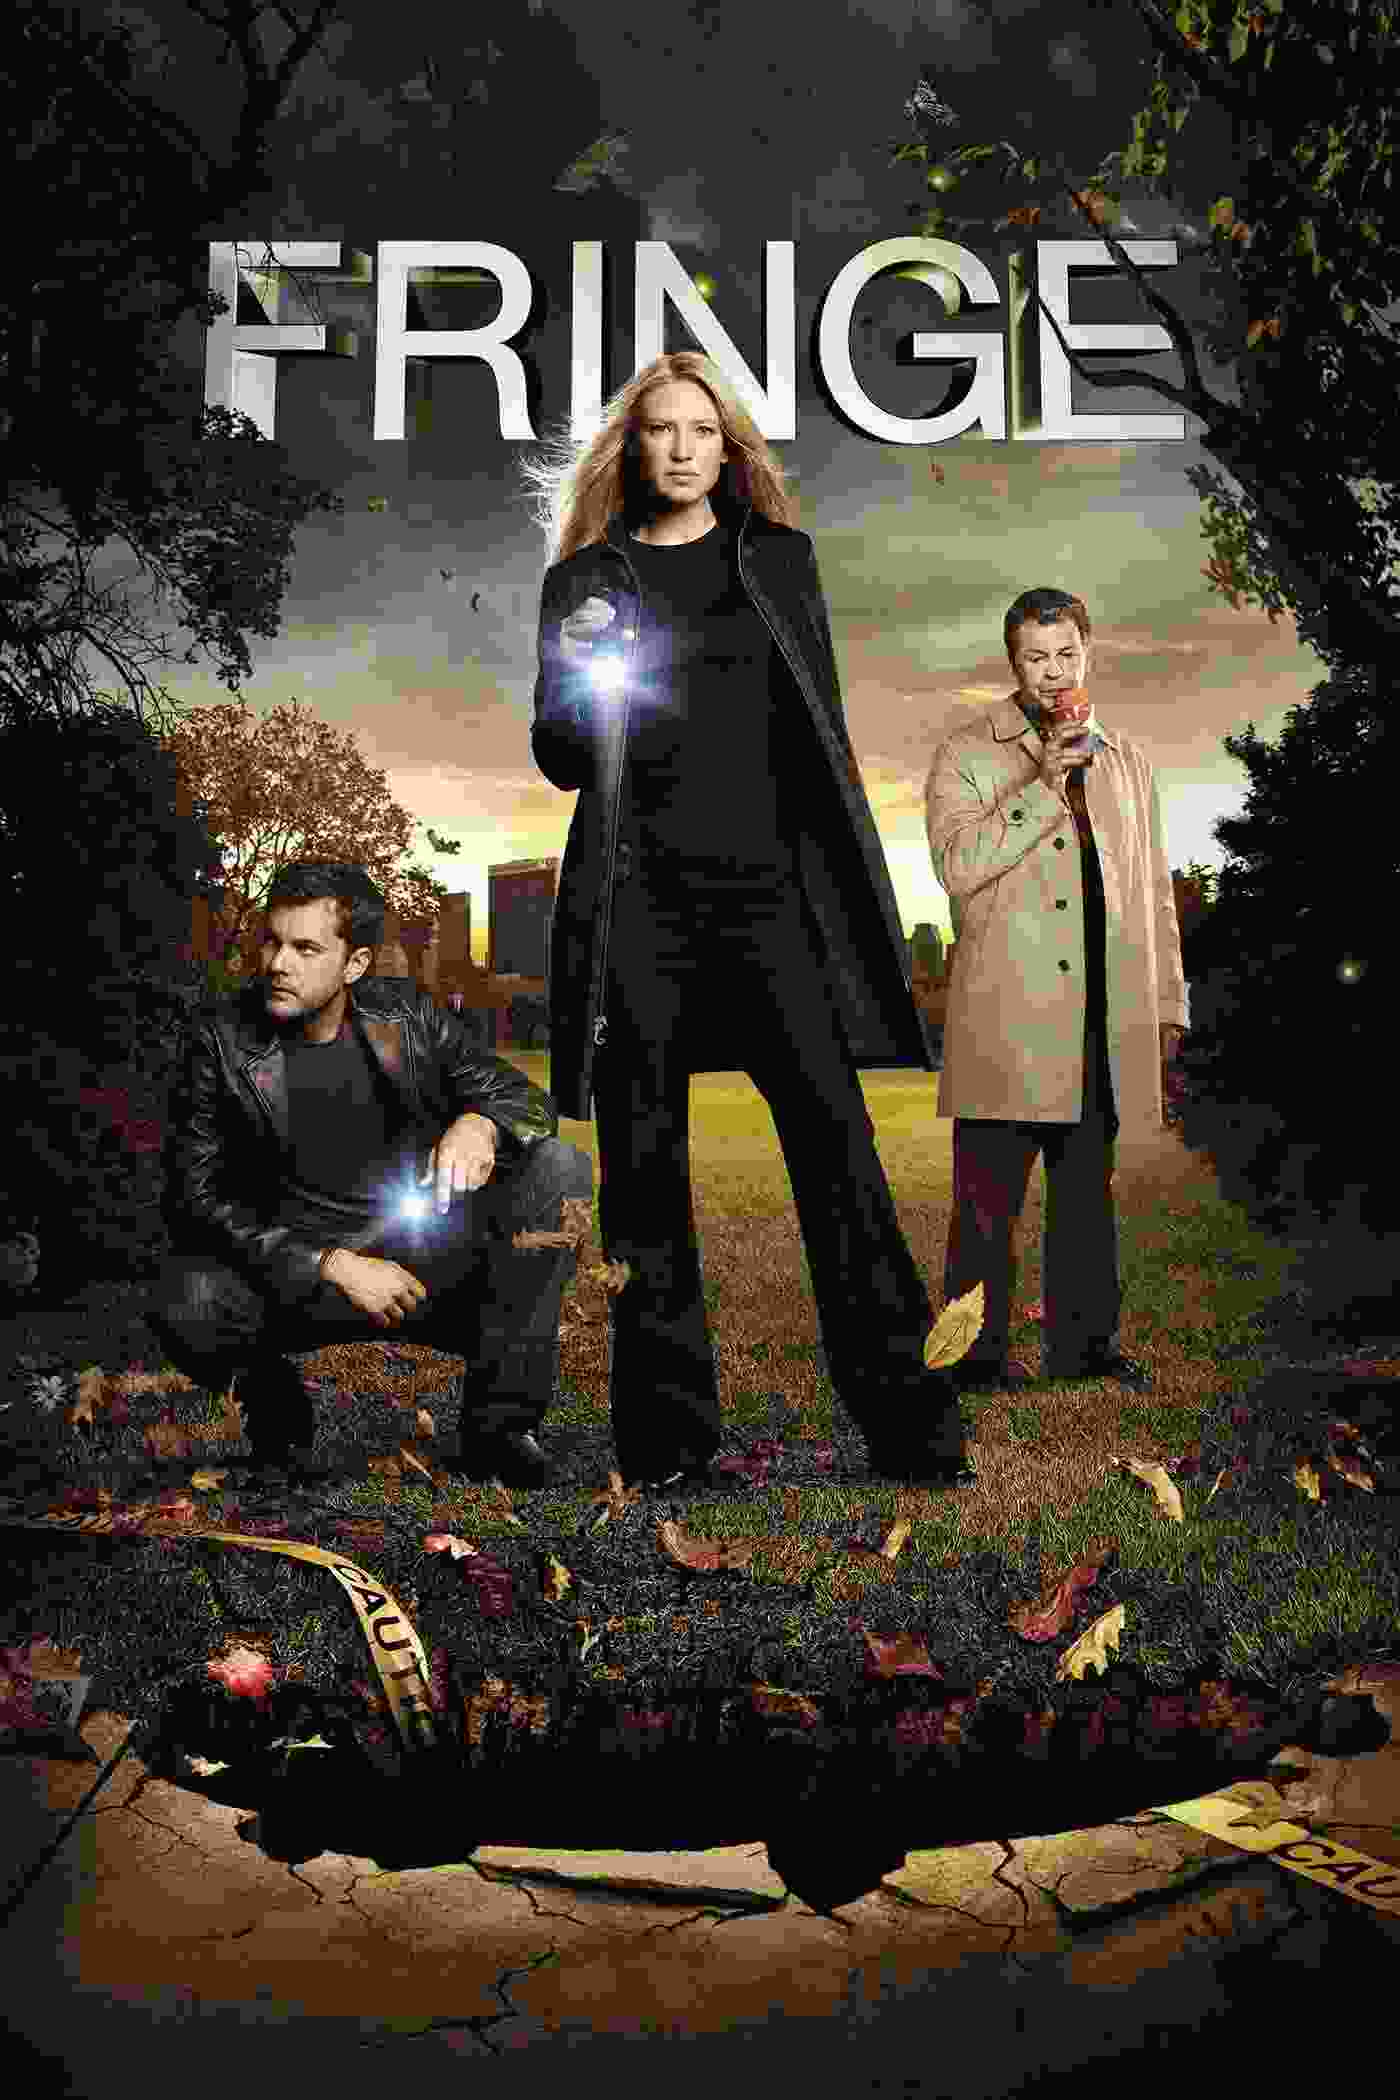 Fringe (TV Series 2008–2013) Anna Torv